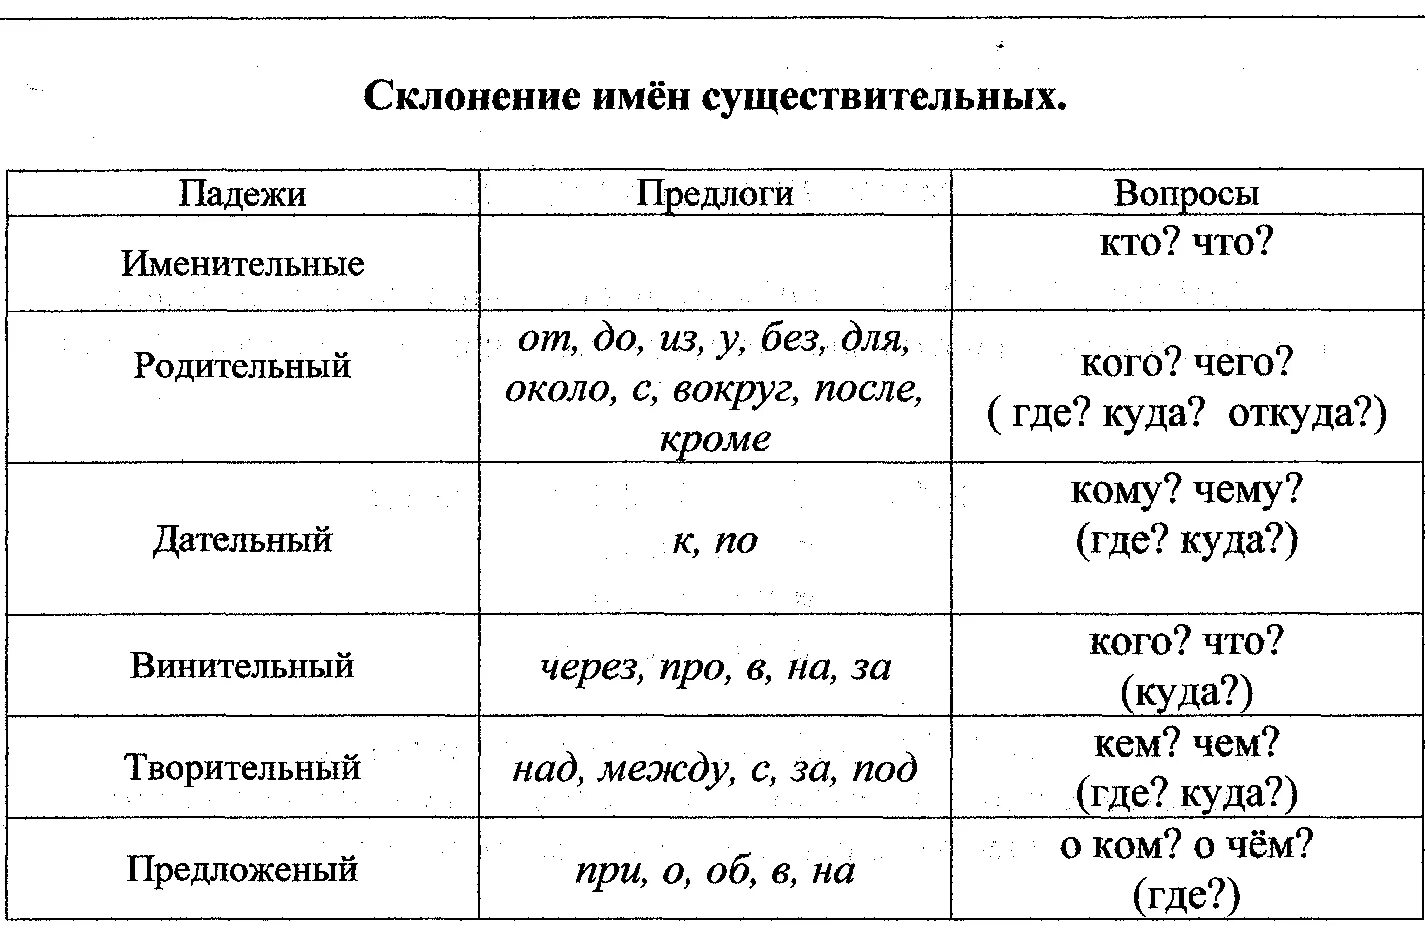 Русский язык падеж имен существительных это. Падежи склонение имен существительных таблица. Падежное склонение имен существительных таблица. Падежи имен существительных таблица. Таблица склонений имён существительных по падежам.